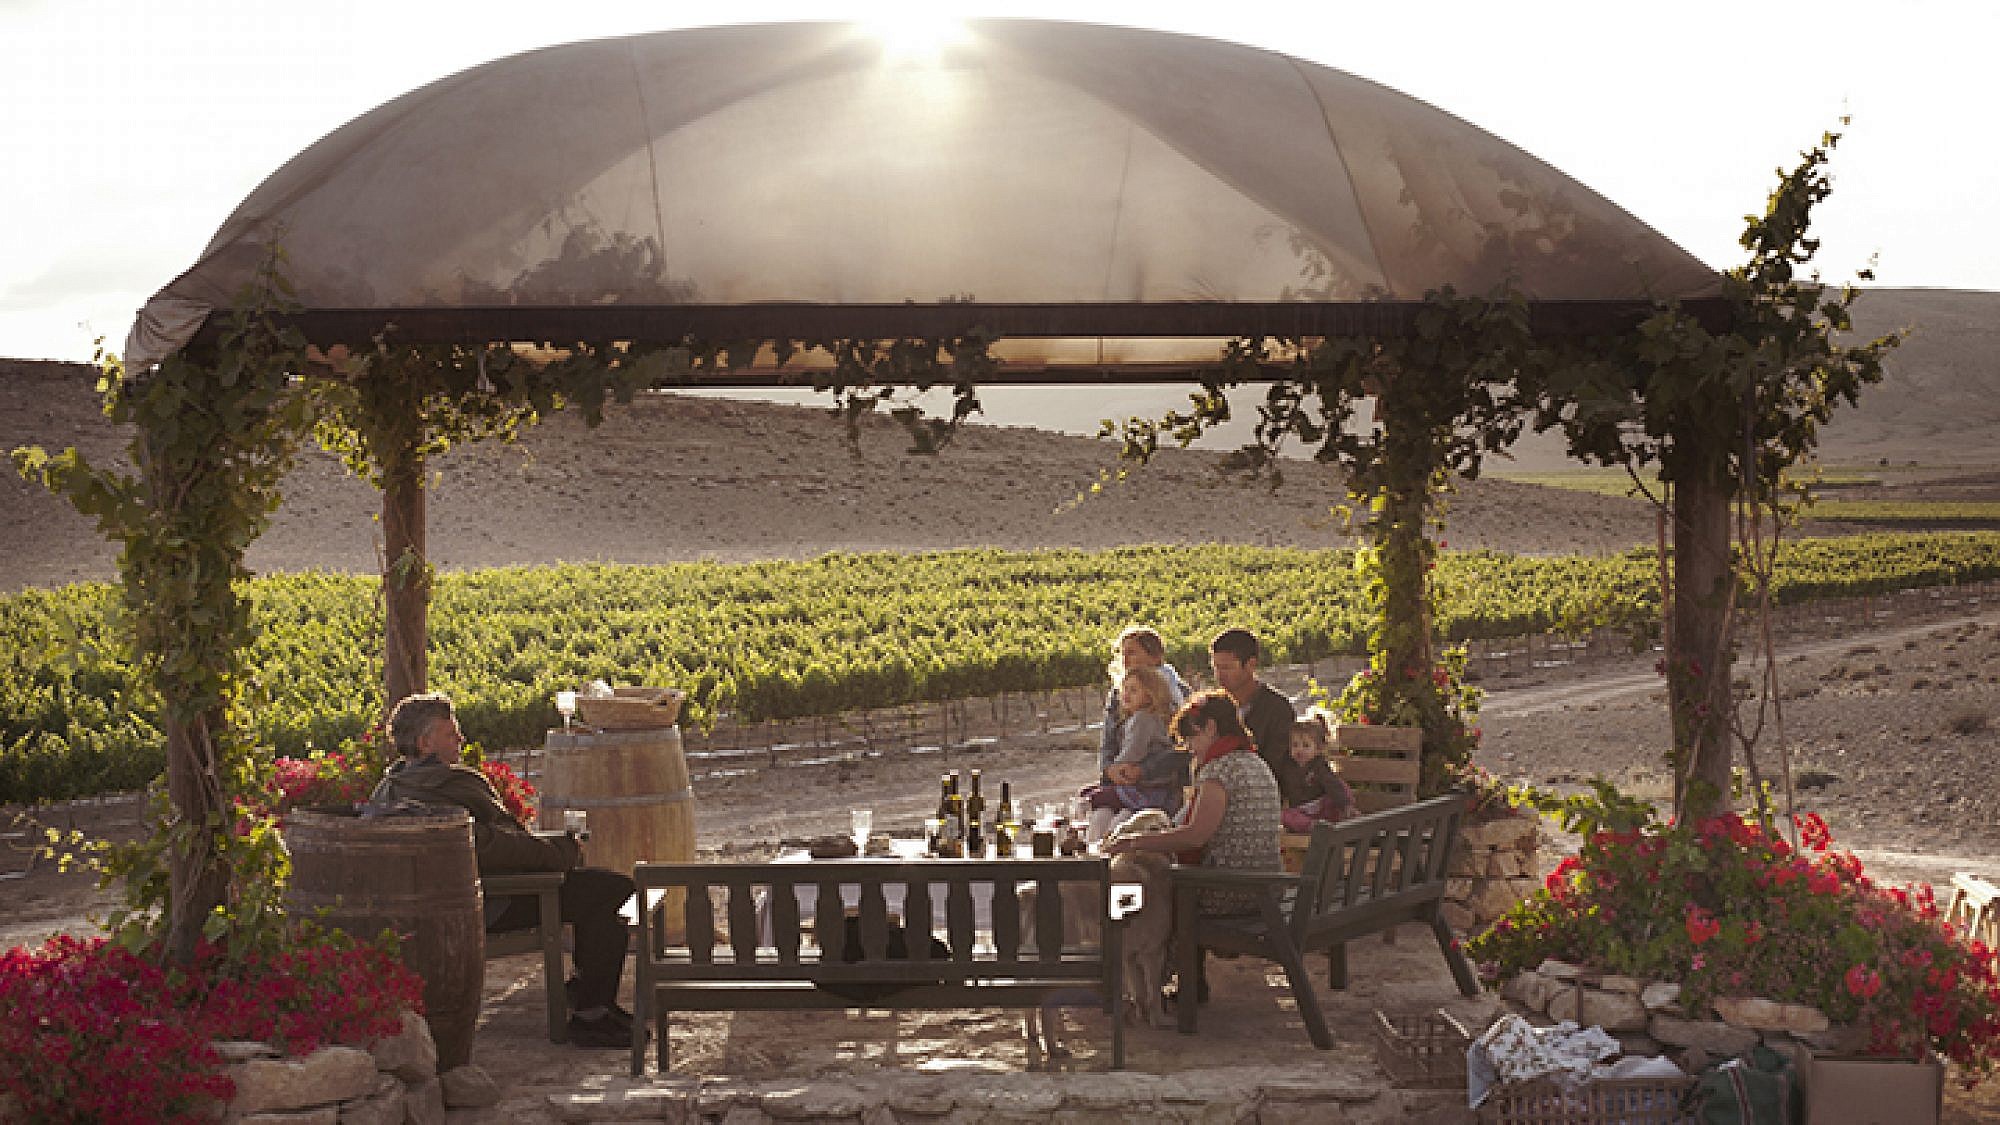 חוות היין ננה: אחד המקומות המרתקים בארץ | צילום: שרון דרעי